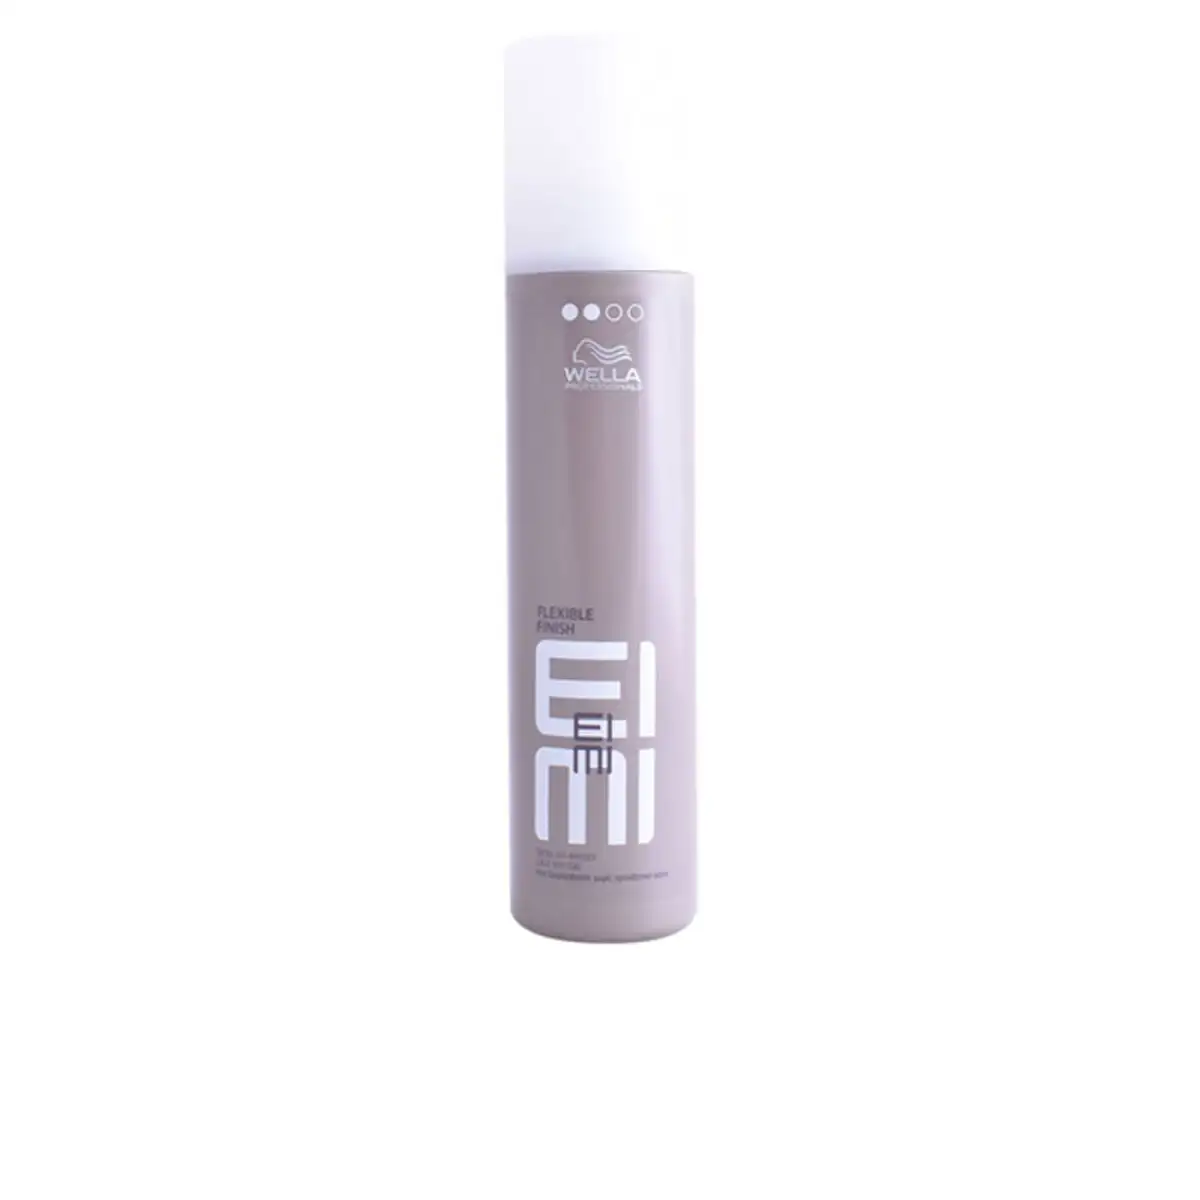 Spray pour cheveux eimi flexible wella 250 ml 250 ml _8072. DIAYTAR SENEGAL - Où Choisir est un Acte de Création. Naviguez à travers notre plateforme et choisissez des produits qui complètent votre histoire personnelle.